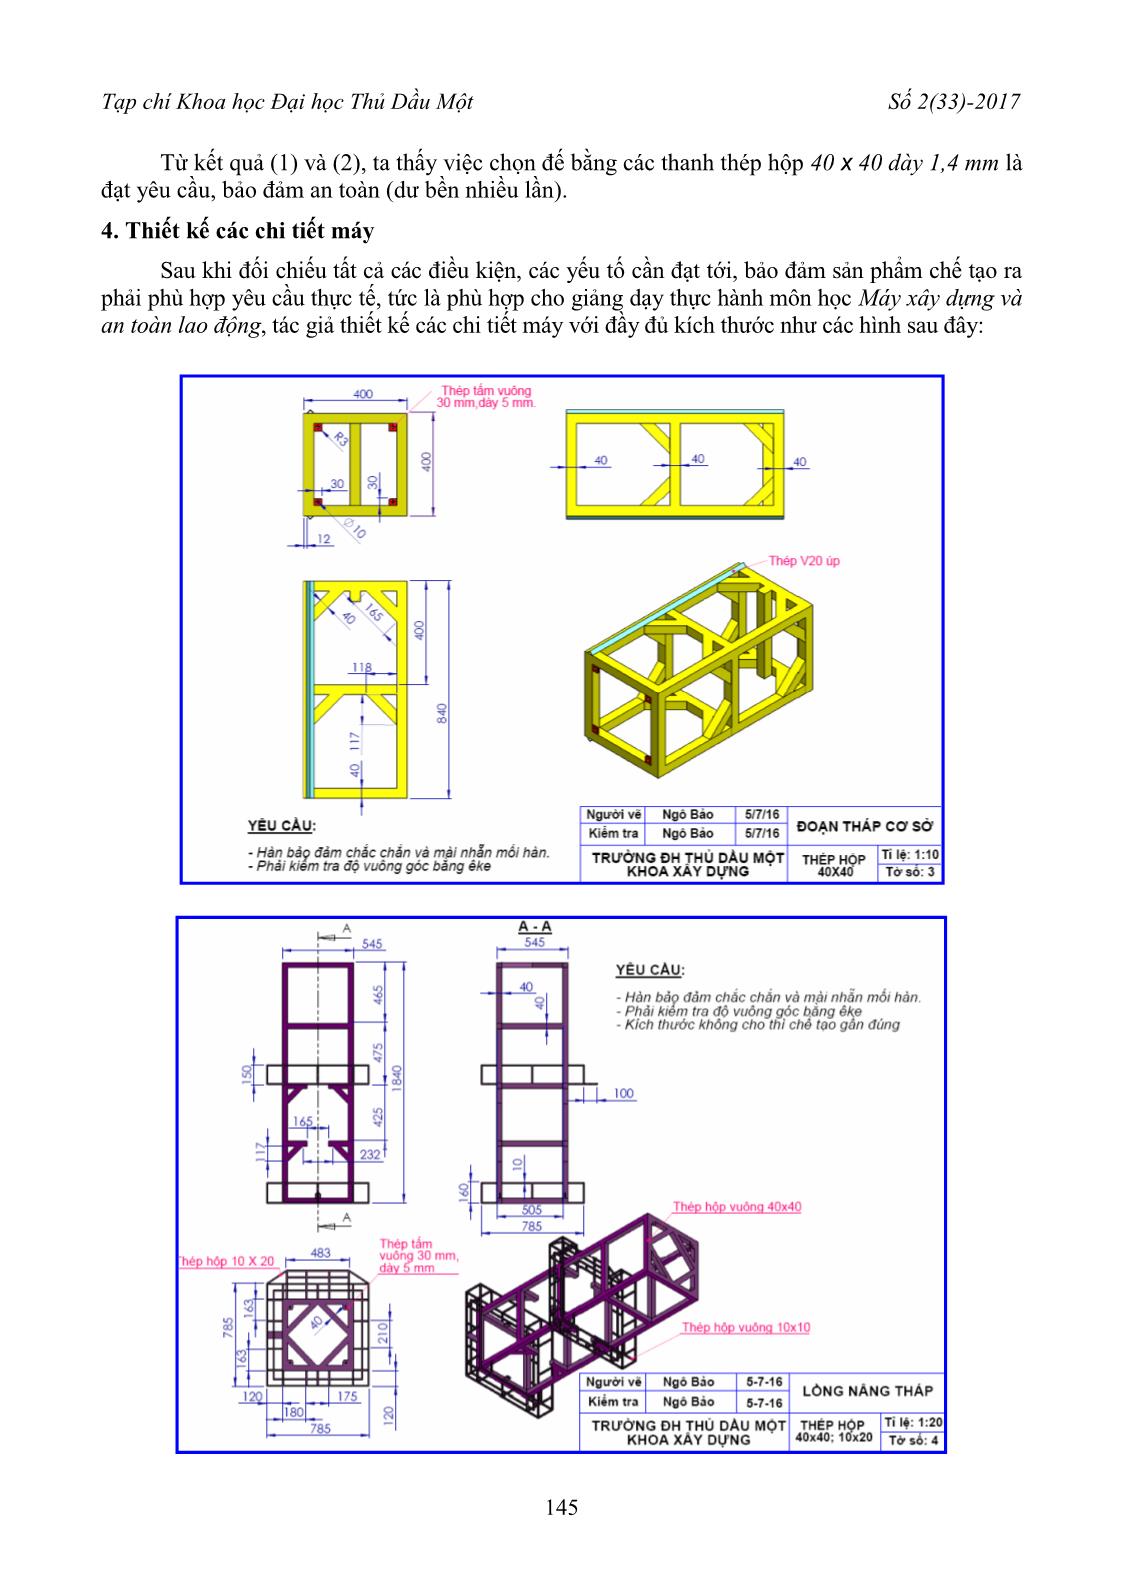 Thiết kế các chi tiết máy cho mô hình cần trục tháp trang 4